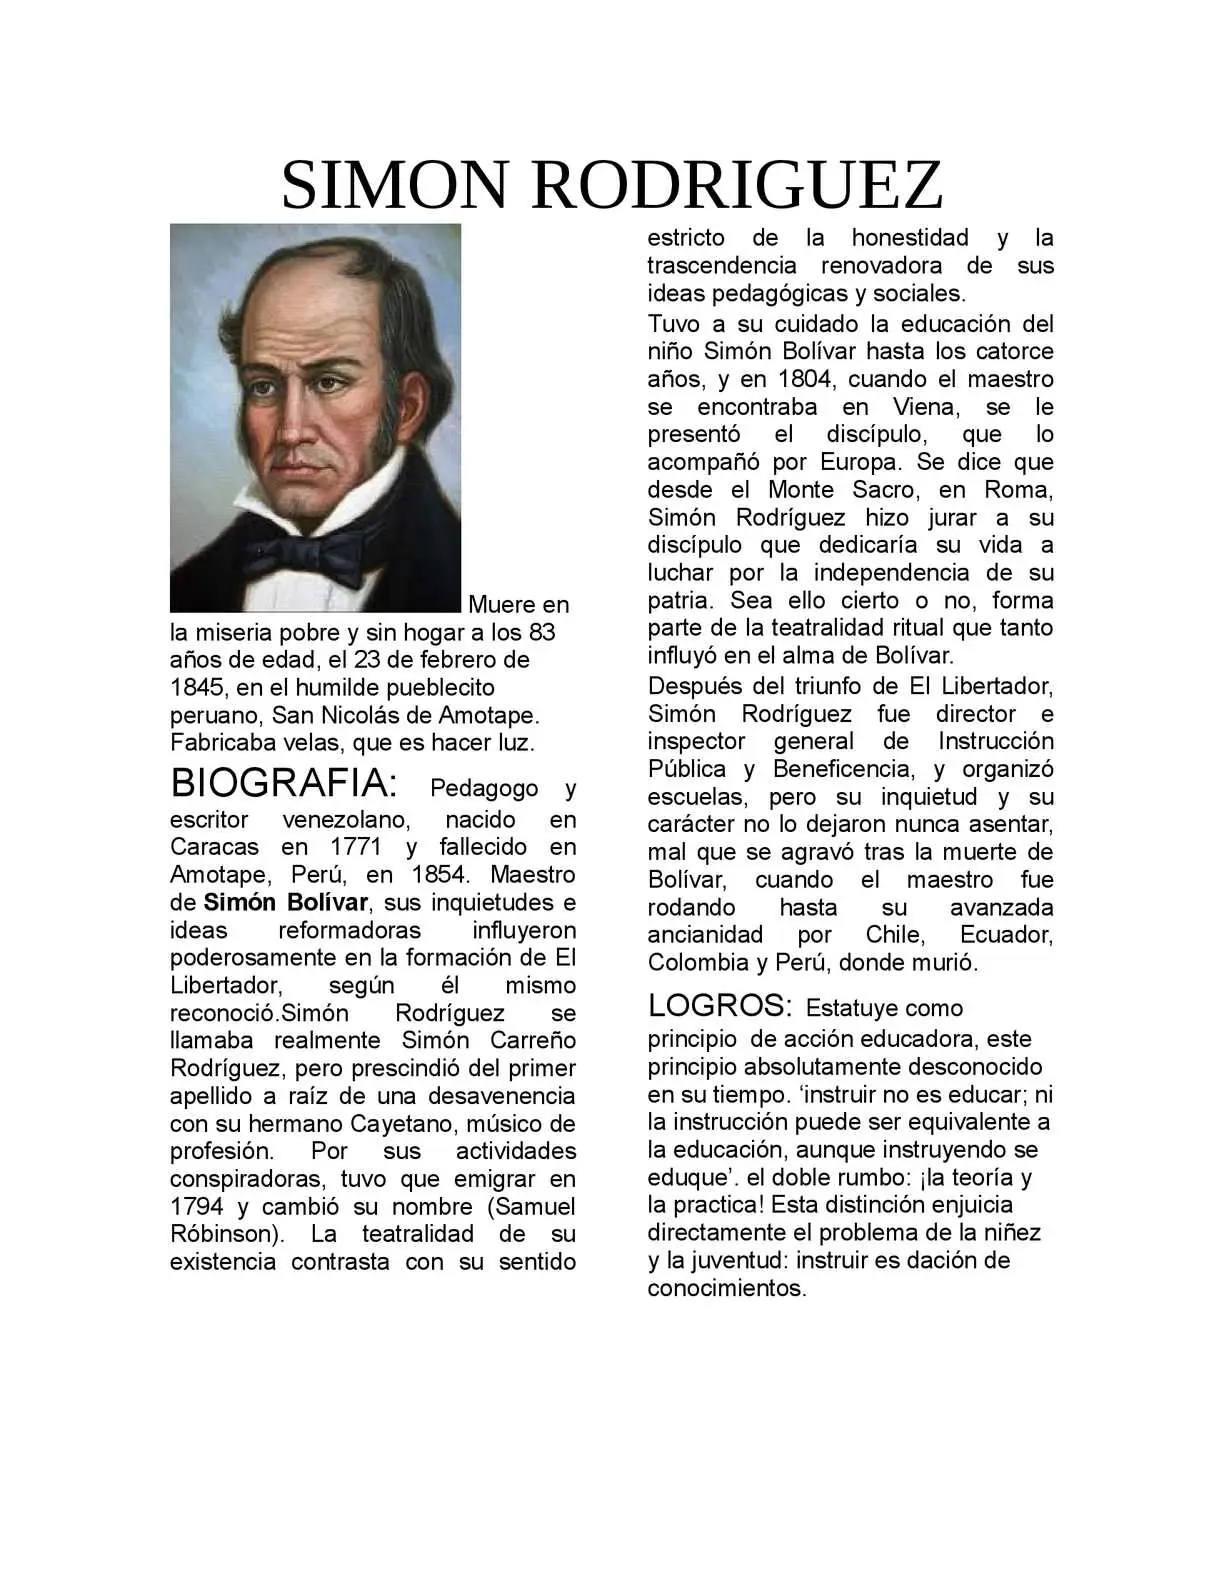 vida y obra de simon rodriguez resumen - Qué enseñanza nos dejó Simón Rodríguez